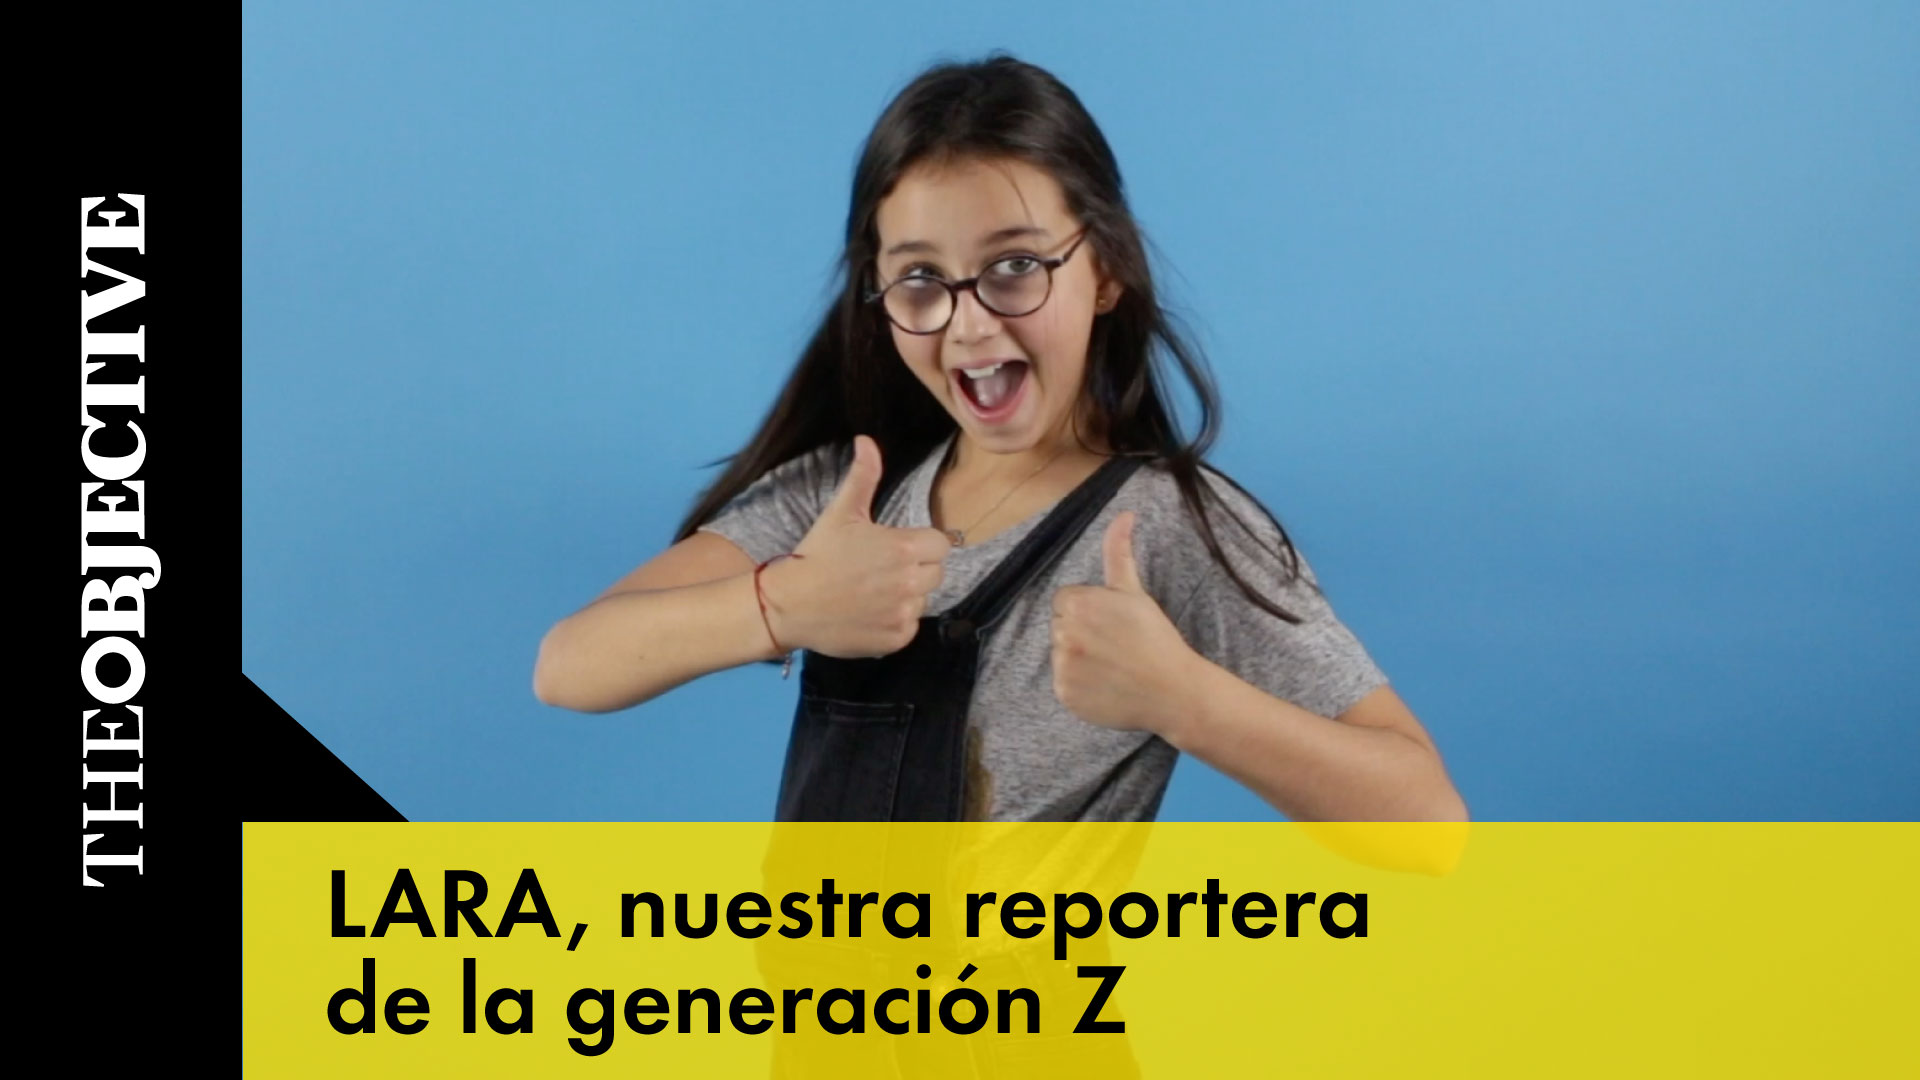 Lara, nuestra reportera de la generación Z